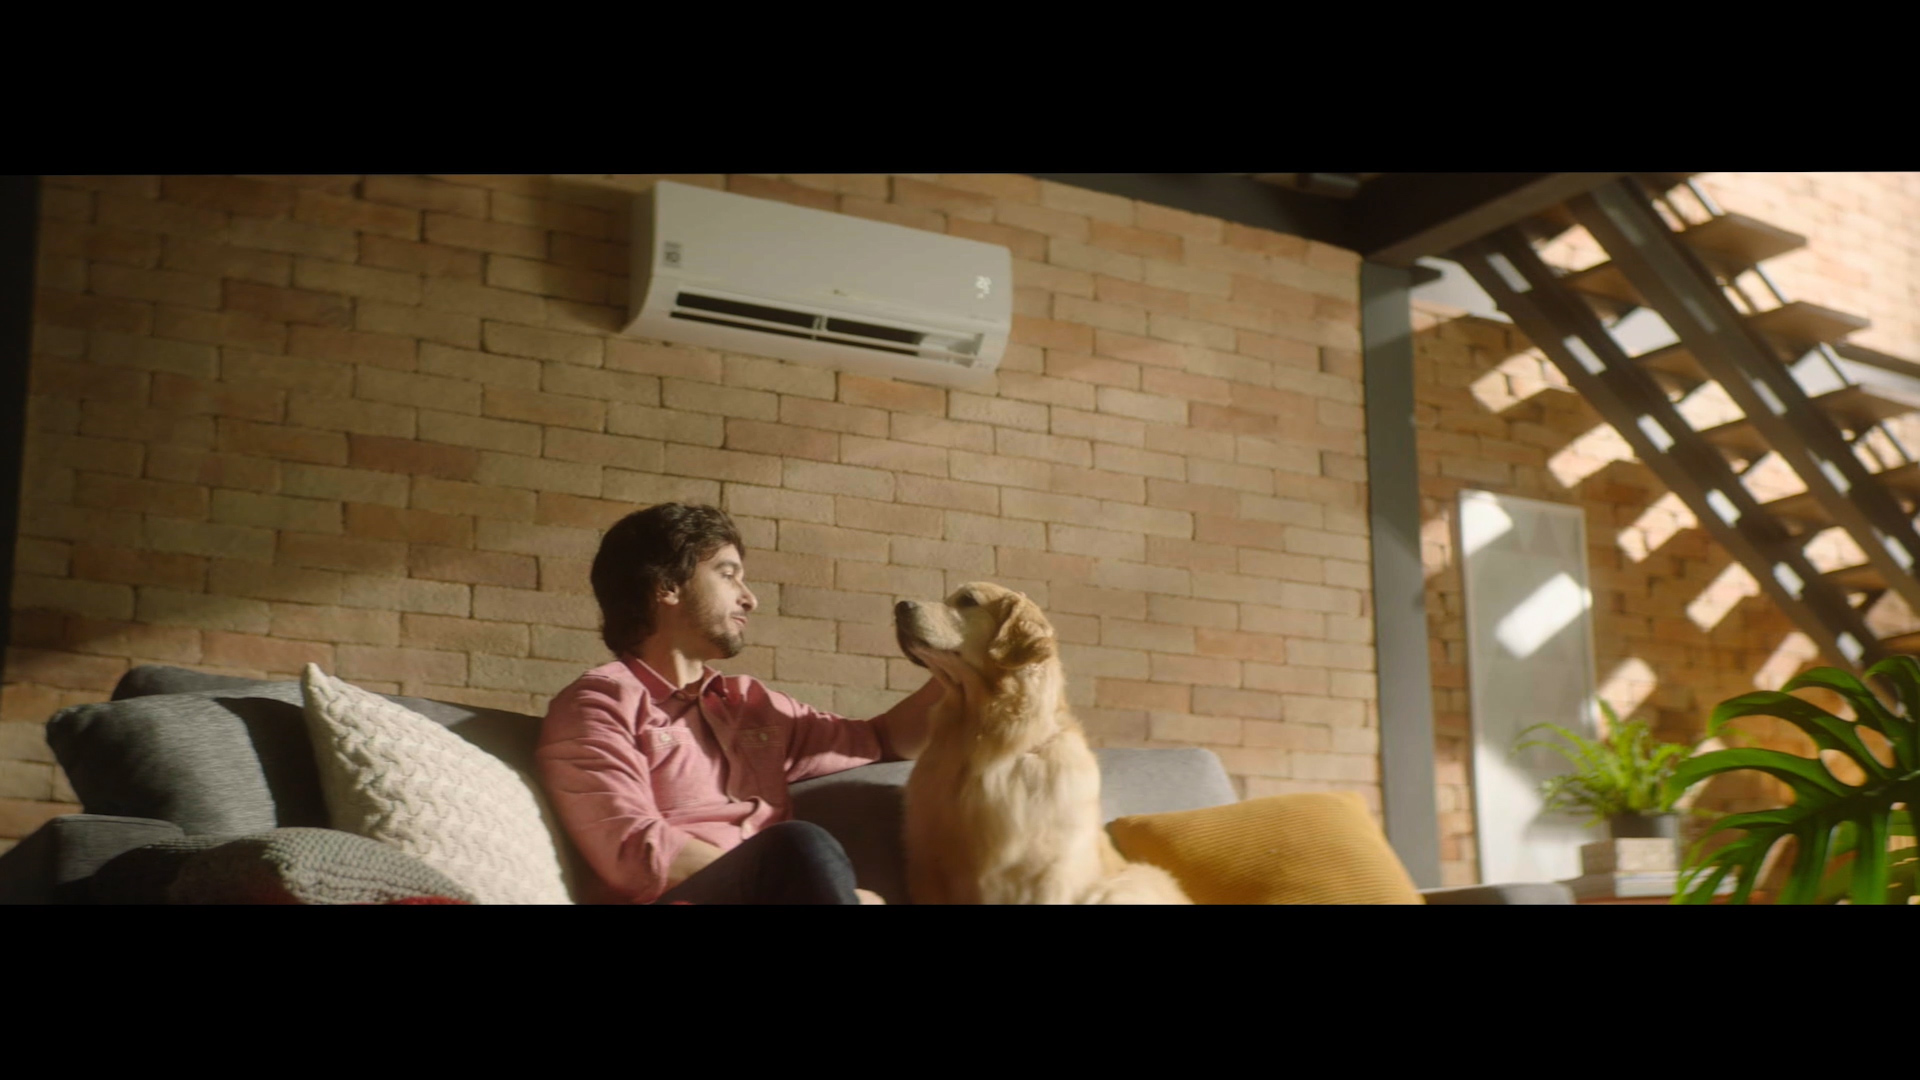 EXCLUSIVO! Veja o making of da campanha do LG Dual Inverter Voice, estrelada por cãozinho fofo